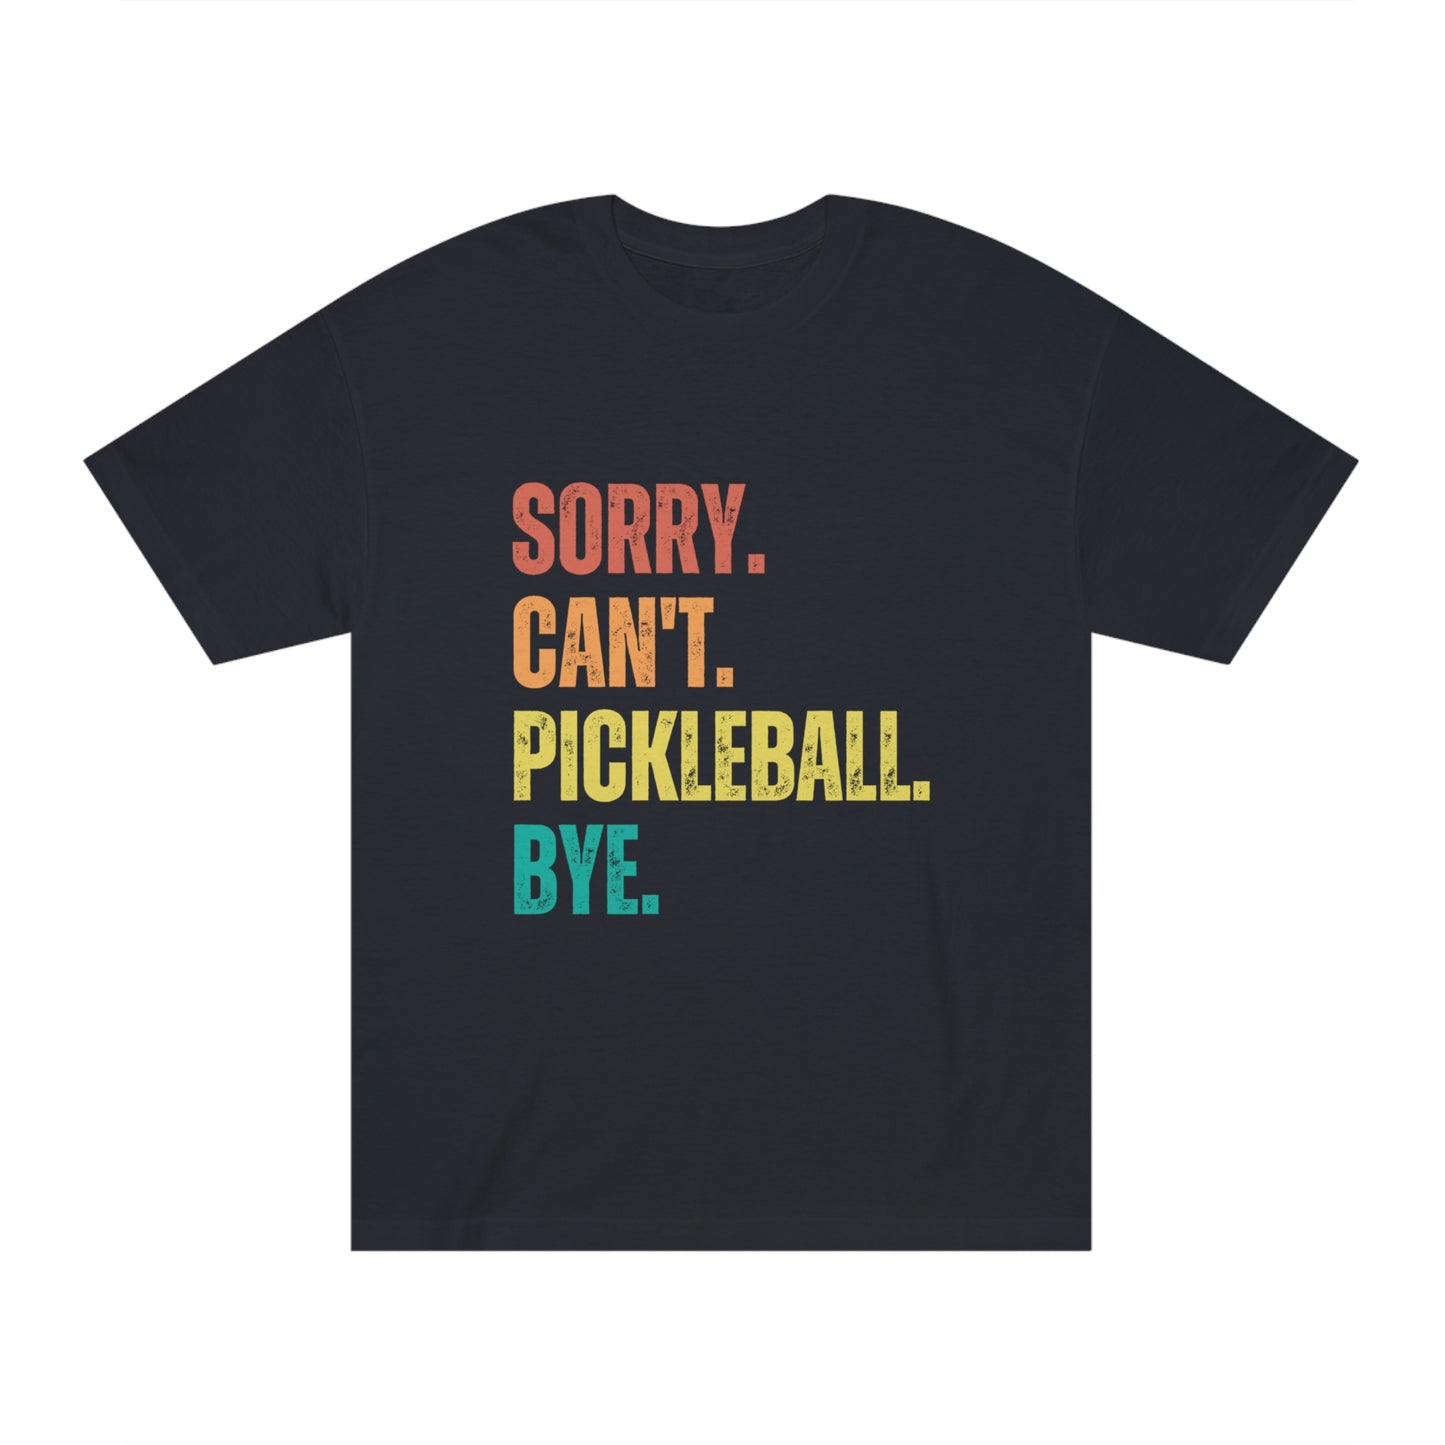 Sorry. Can't. Pickleball. Bye.